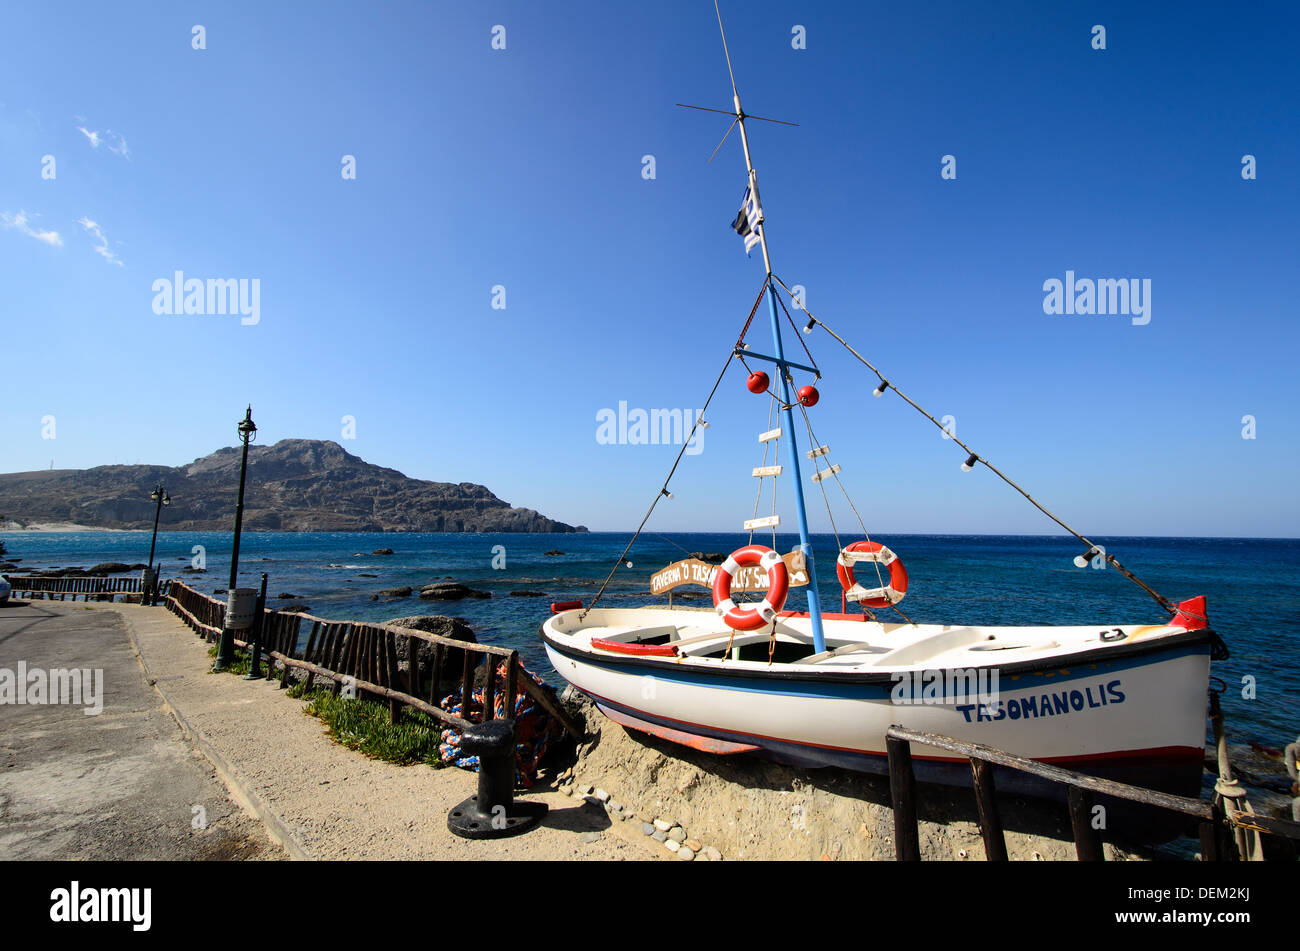 Boat in the promenade of Plakias - Crete, Greece Stock Photo